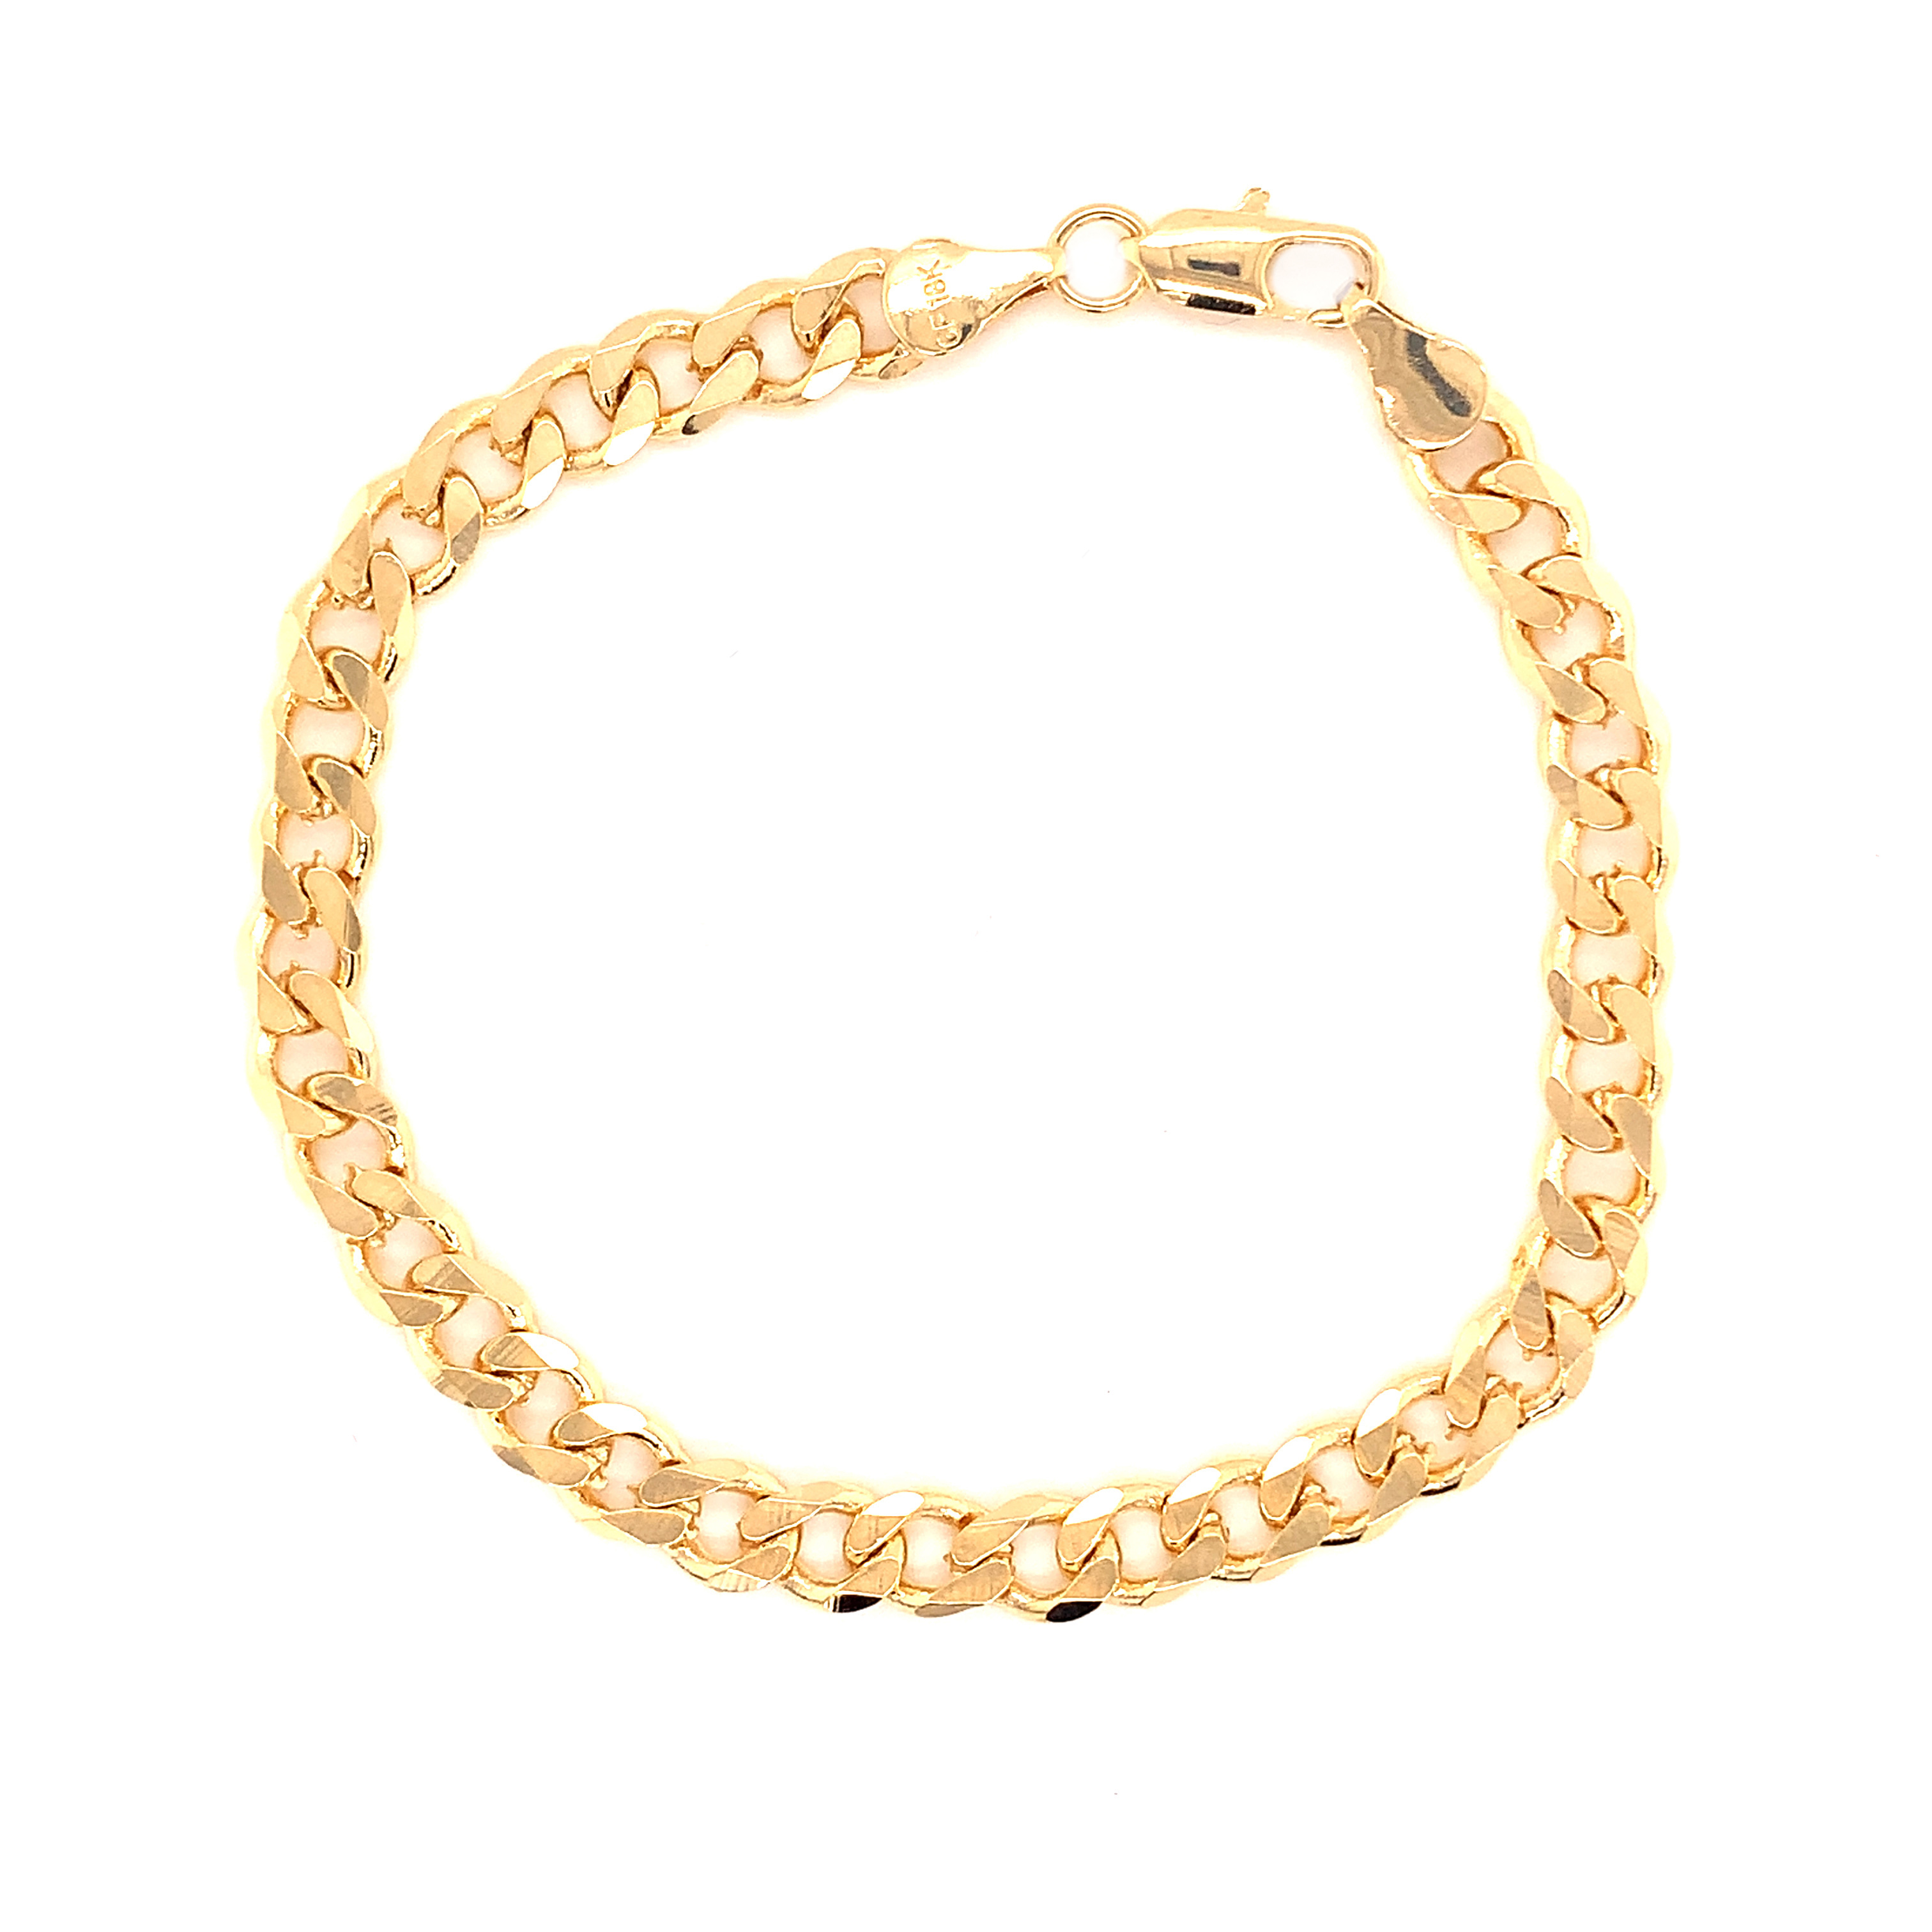 Curb Bracelet - 7.5"- Gold Filled